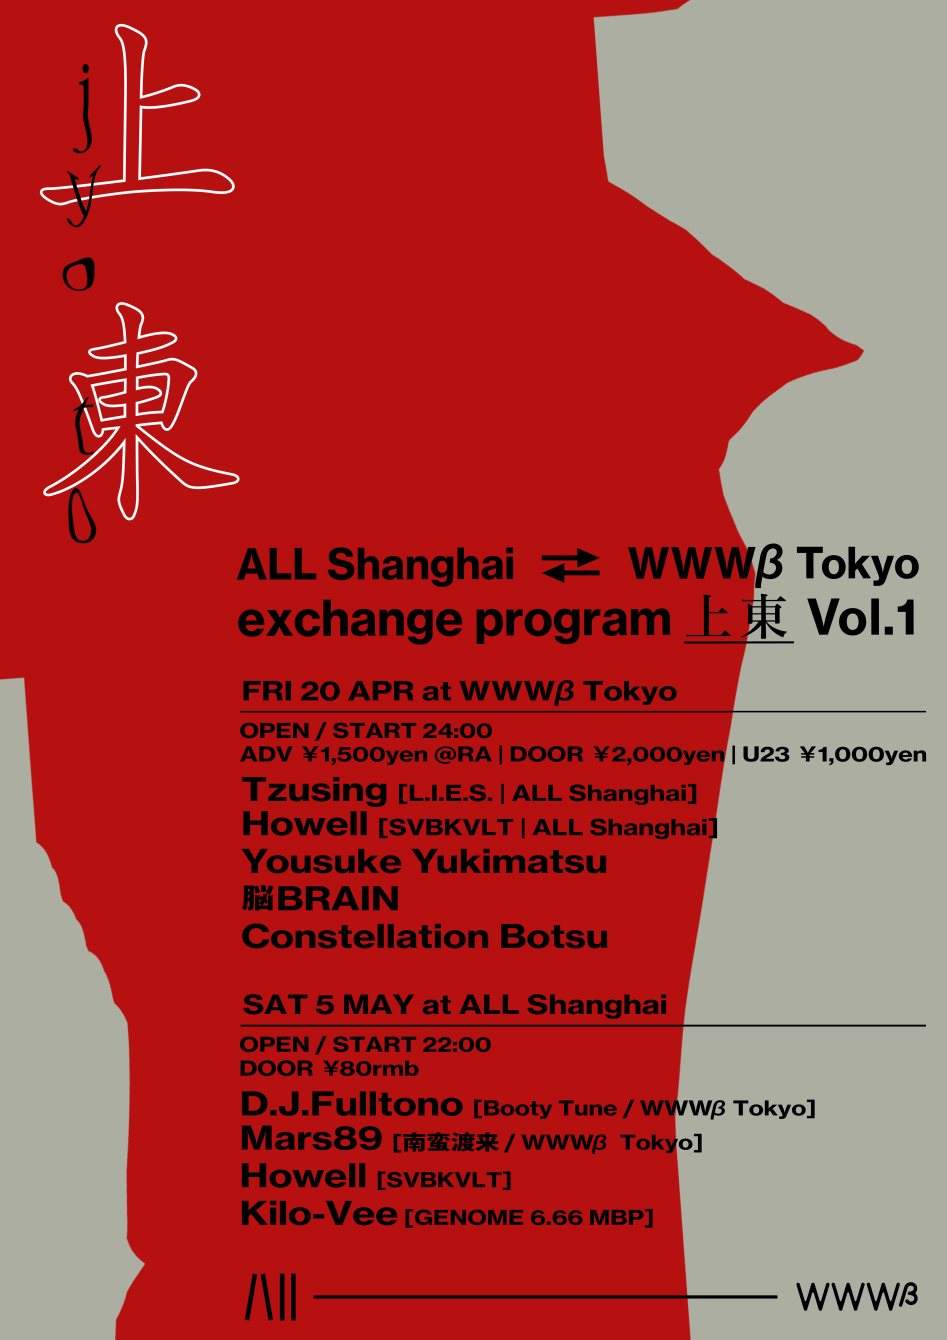 All Shanghai ⇄ WWWβ Tokyo exchange program 上東 Vol.1 - フライヤー表